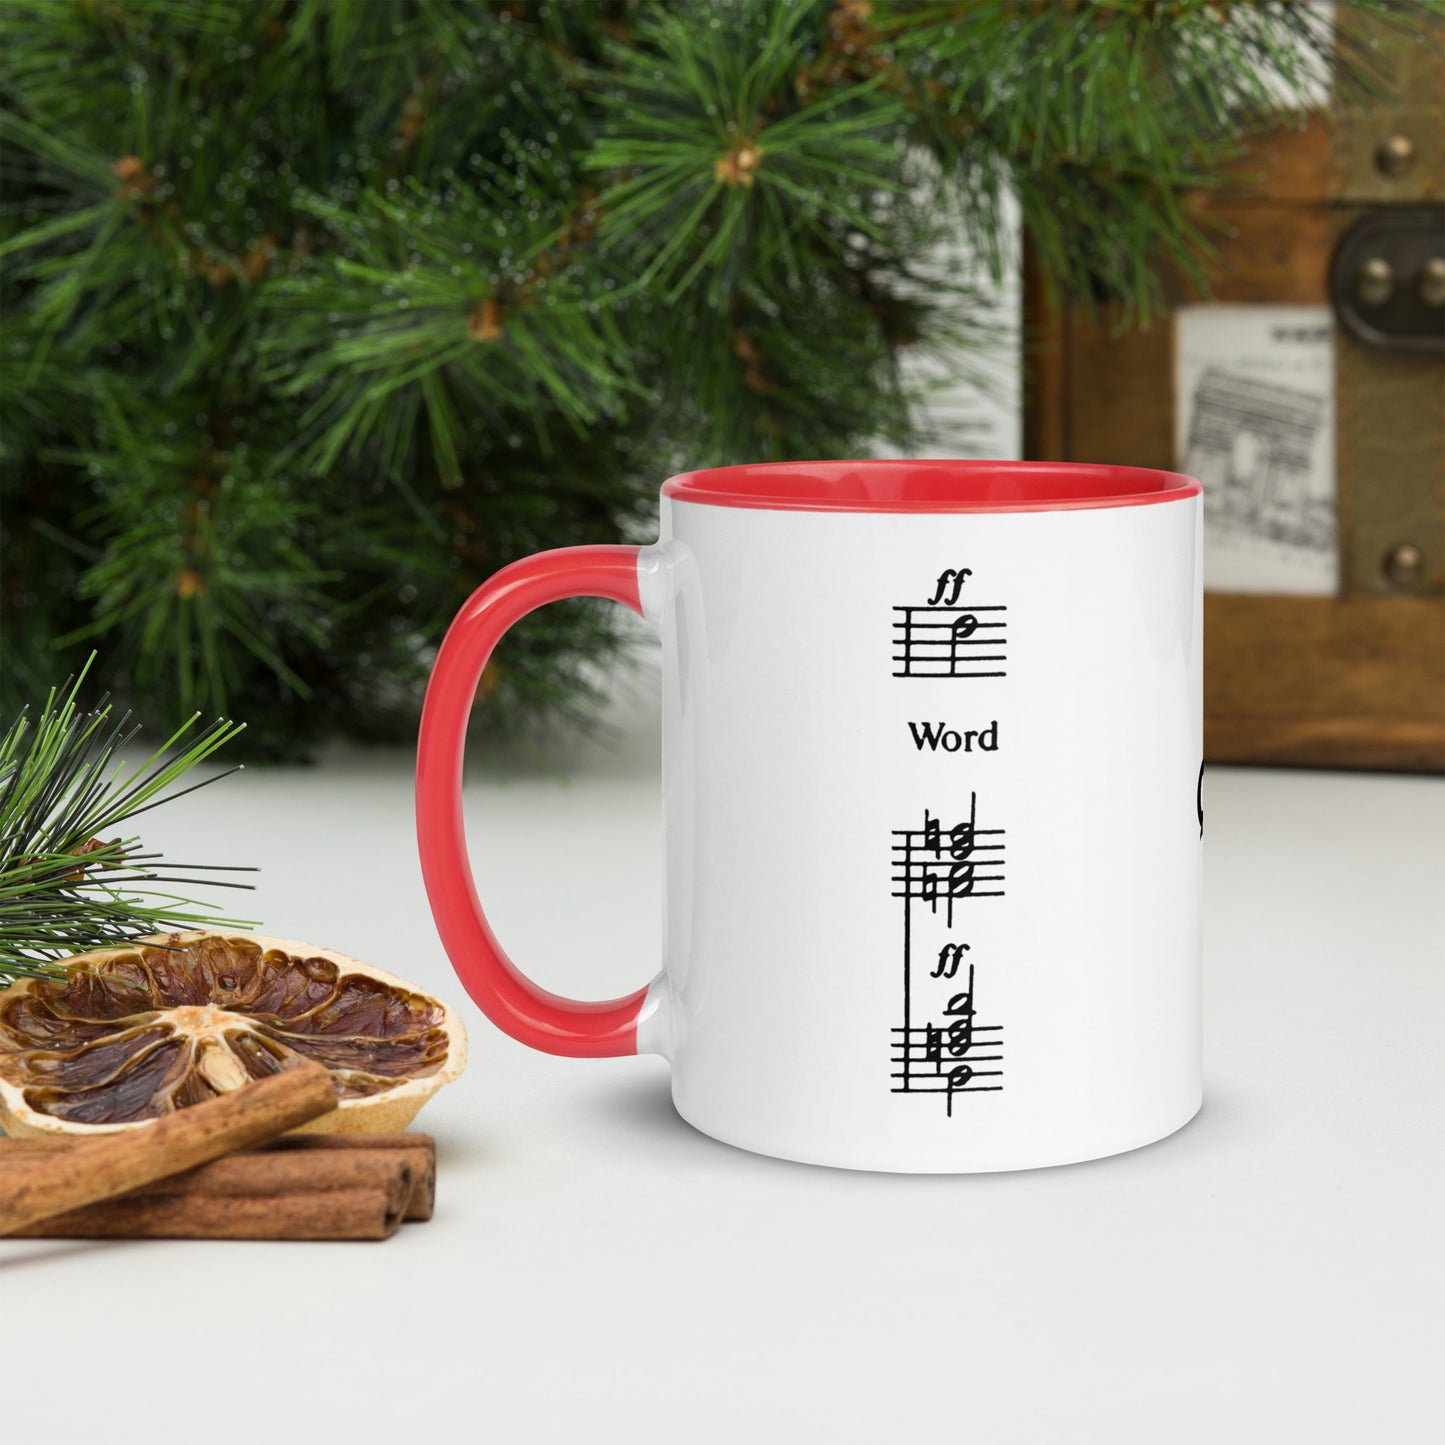 Word - Christmas Mug